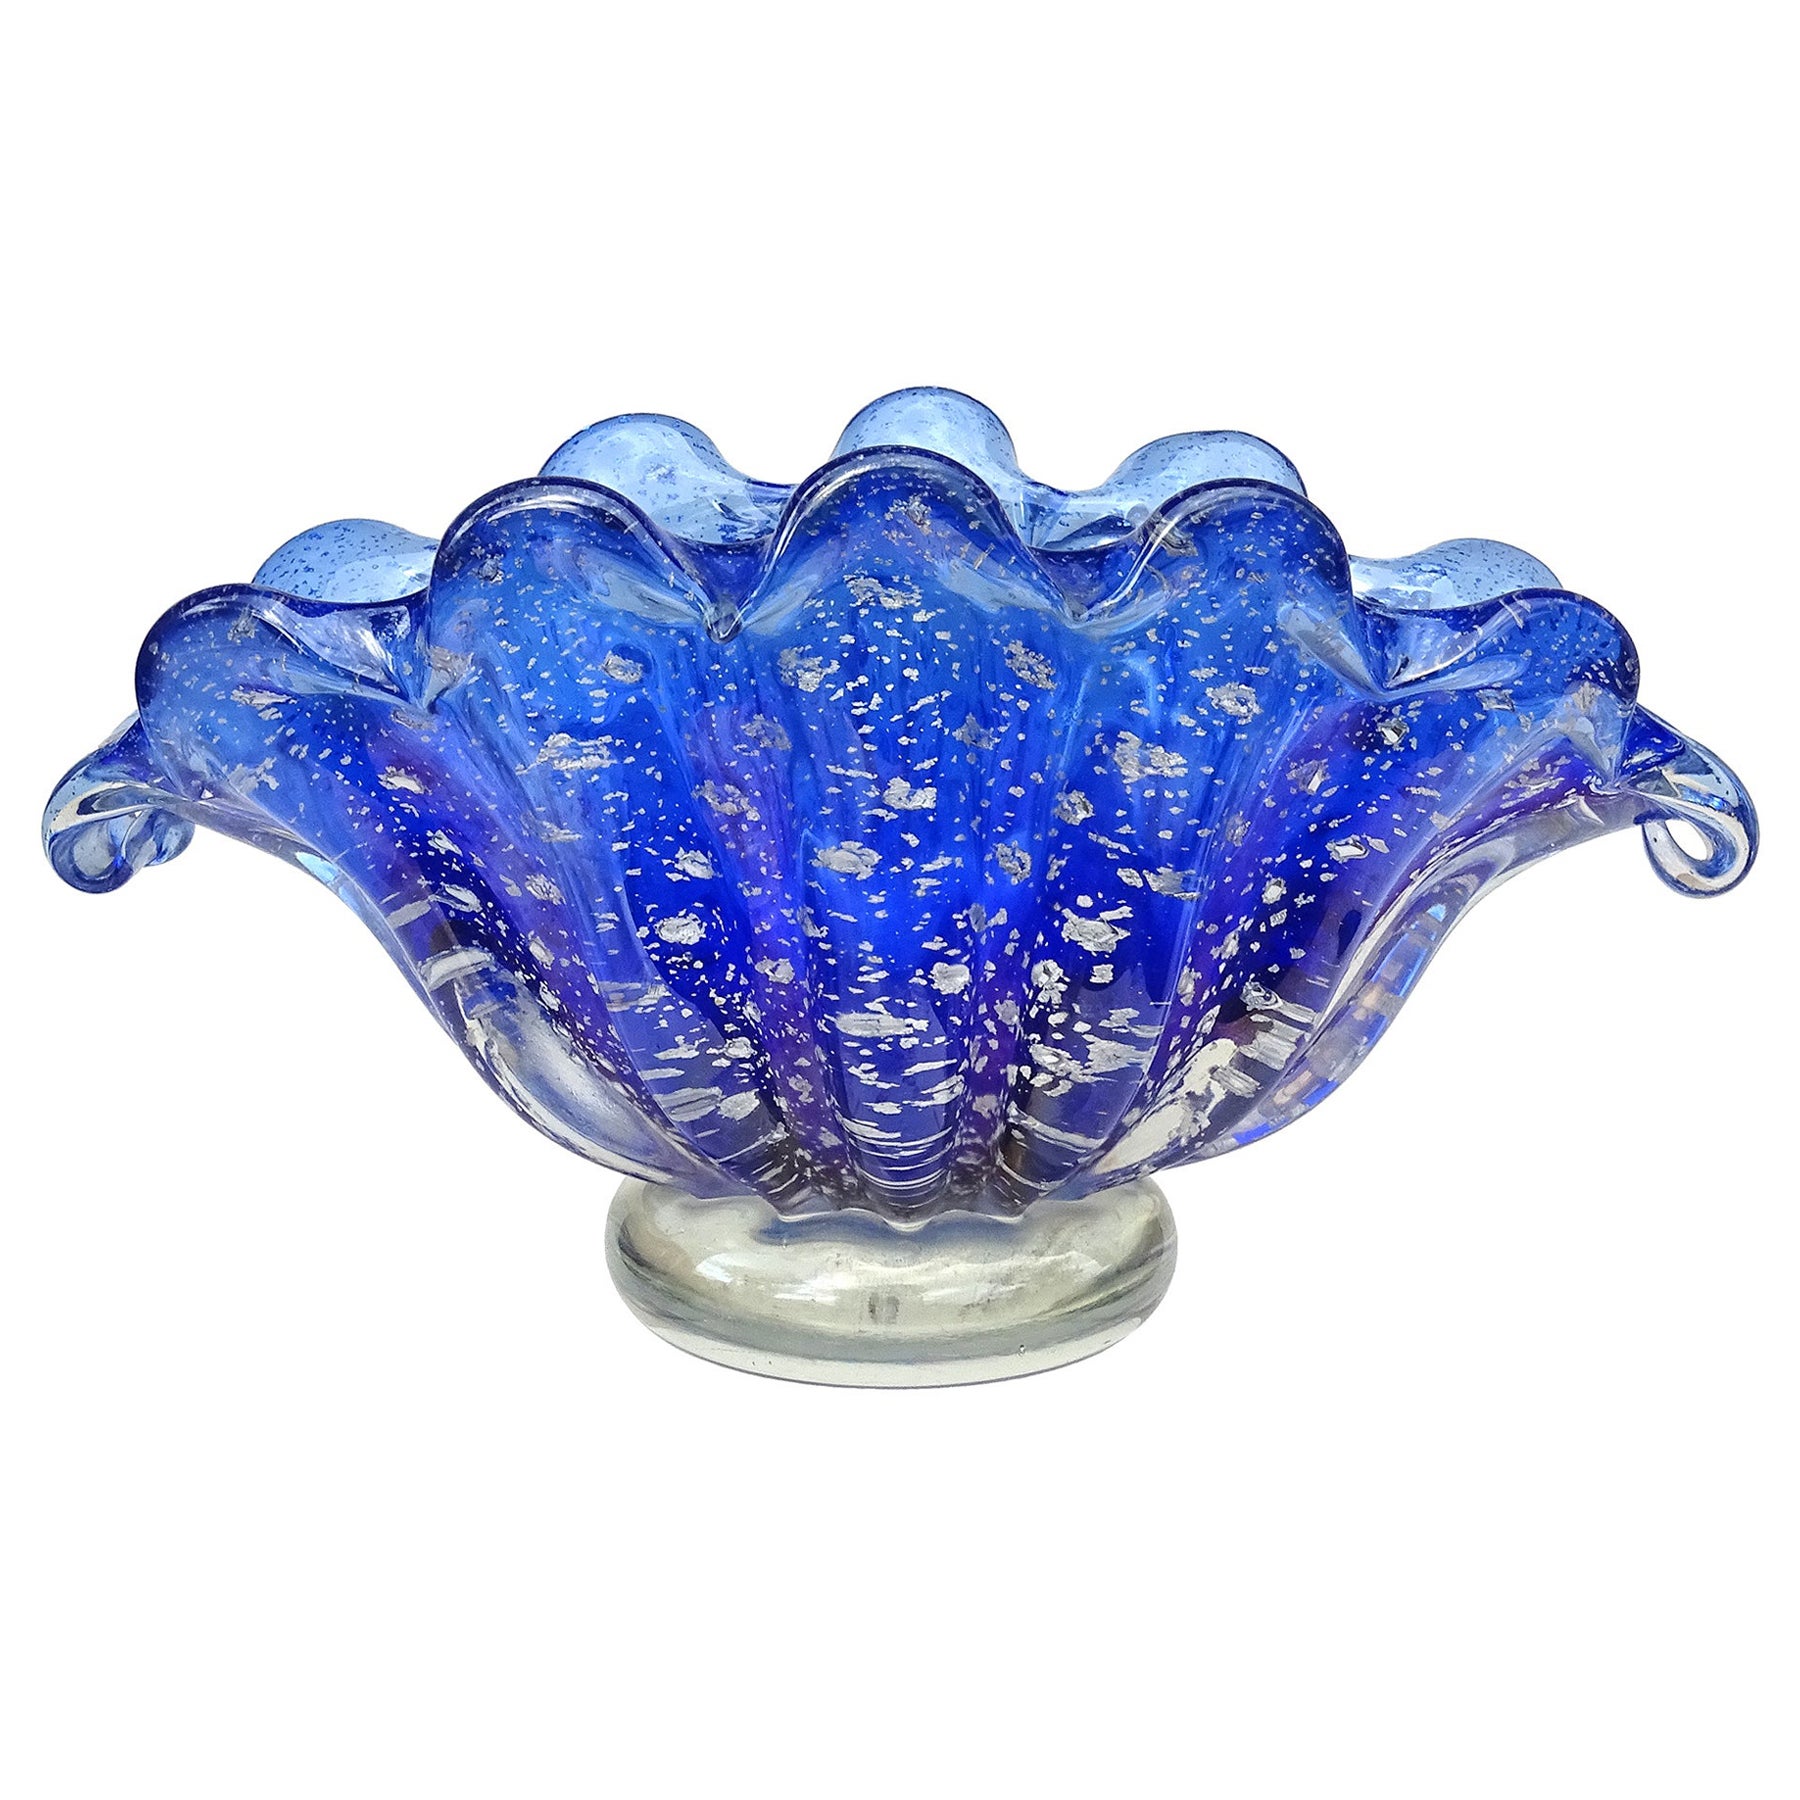 Barovier Toso Murano Cobalt Blue Silver Flecks Italian Art Glass Shell Bowl Vase For Sale